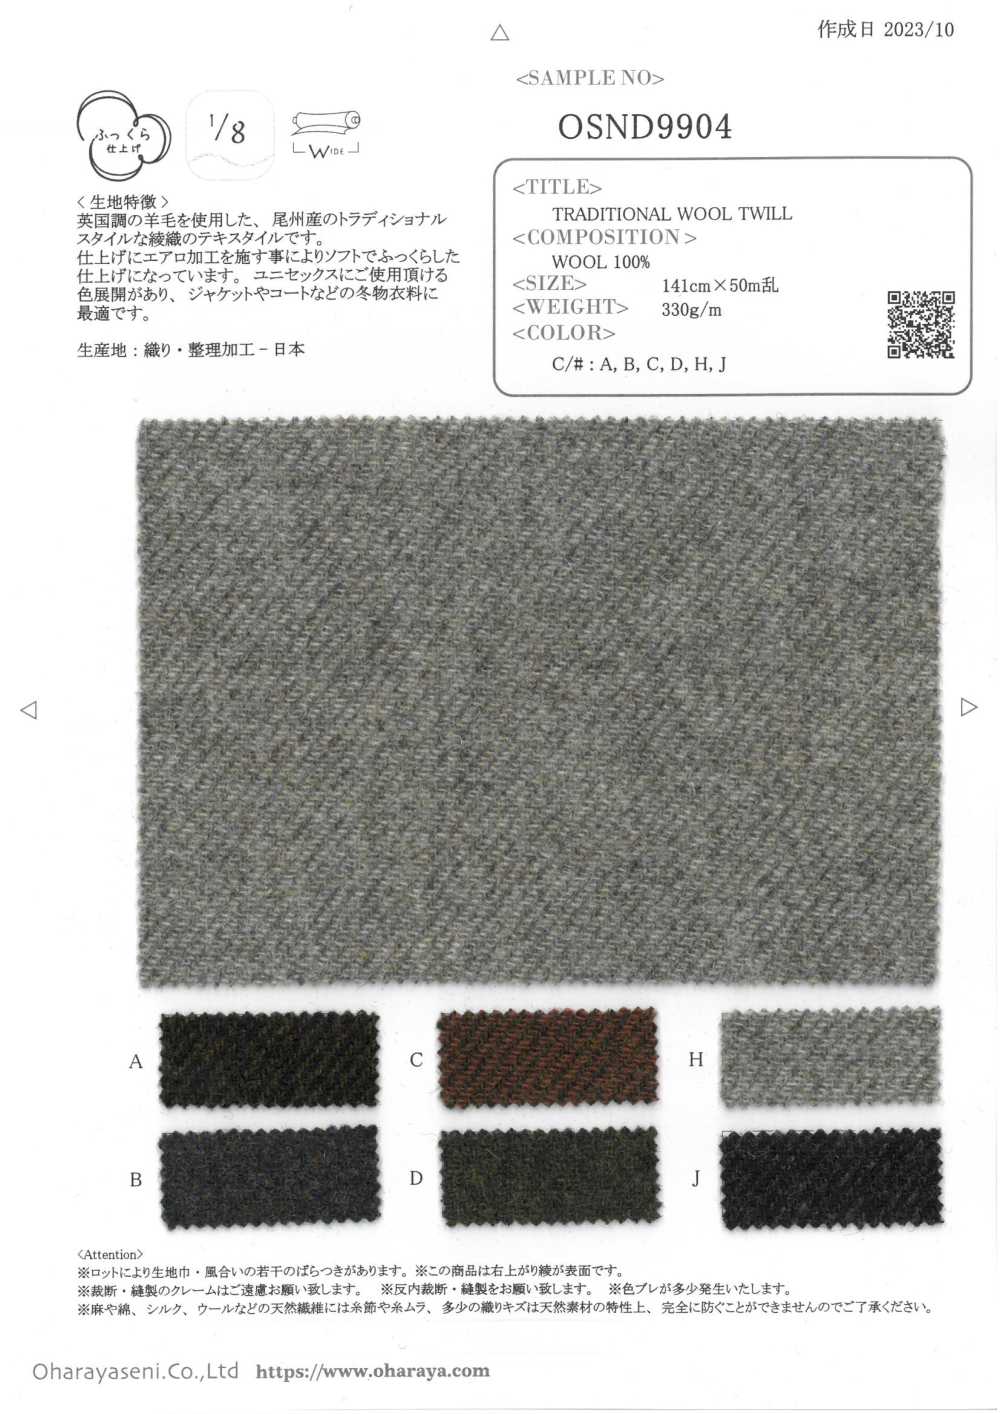 OSND9904 SARGA DE LANA TRADICIONAL[Fabrica Textil] Oharayaseni